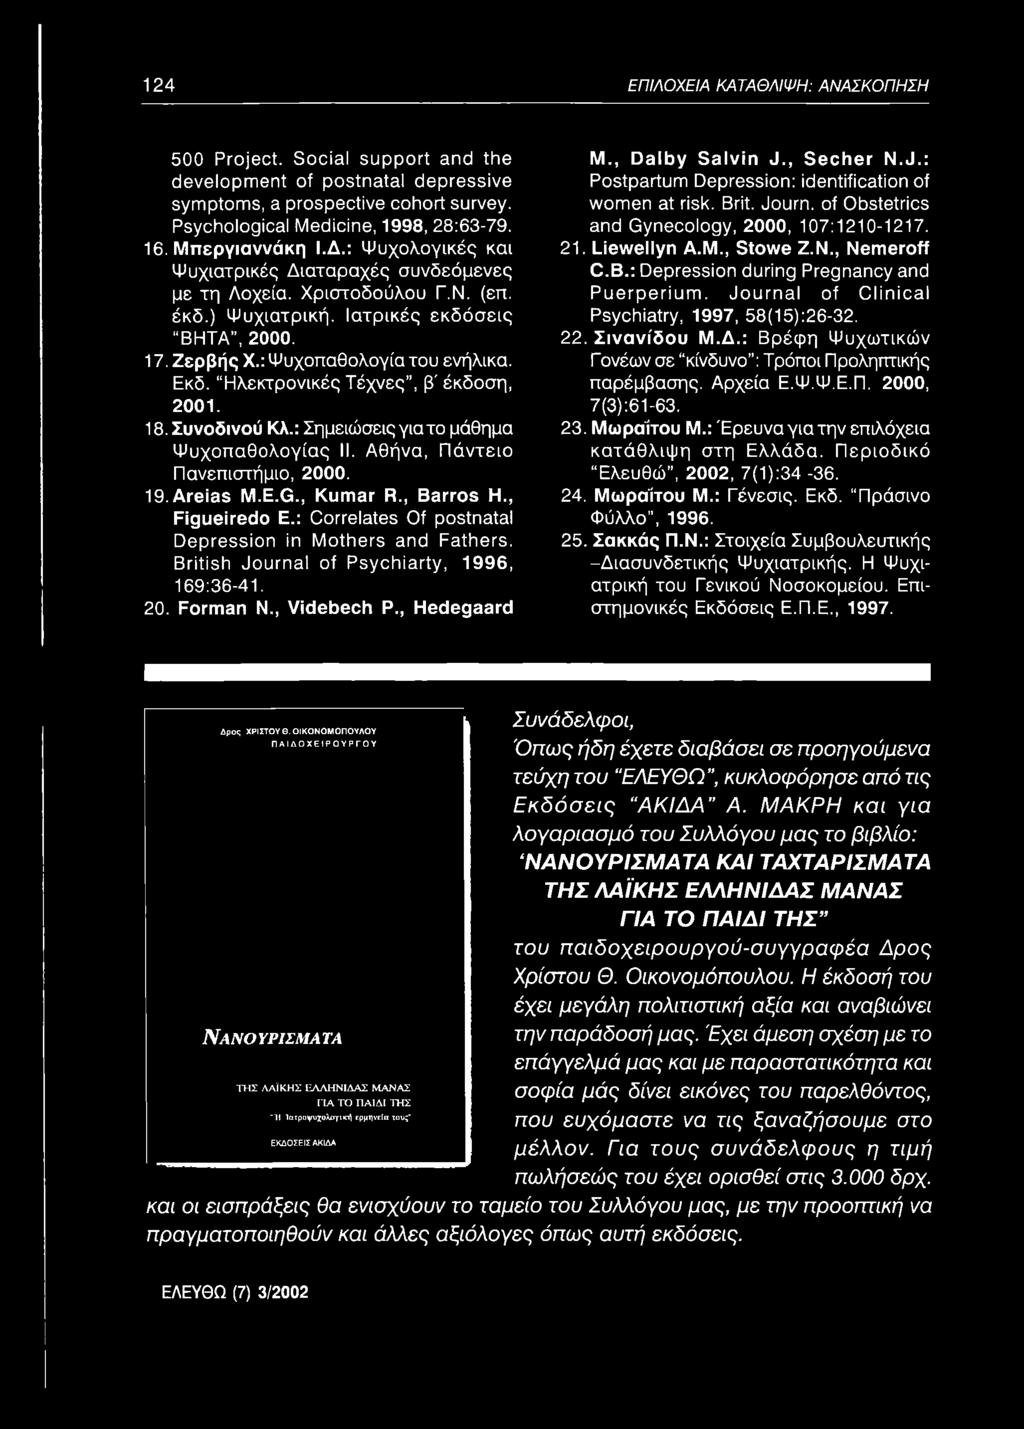 17. Ζερβής X.: Ψυχοπαθολογία του ενήλικα. Εκδ. Ηλεκτρονικές Τέχνες, β' έκδοση, 2001. 18. Συνοδινού Κλ.: Σημειώσεις για το μάθημα Ψυχοπαθολογίας II. Αθήνα, Πάντειο Πανεπιστήμιο, 2000. 19. Areias M.E.G.